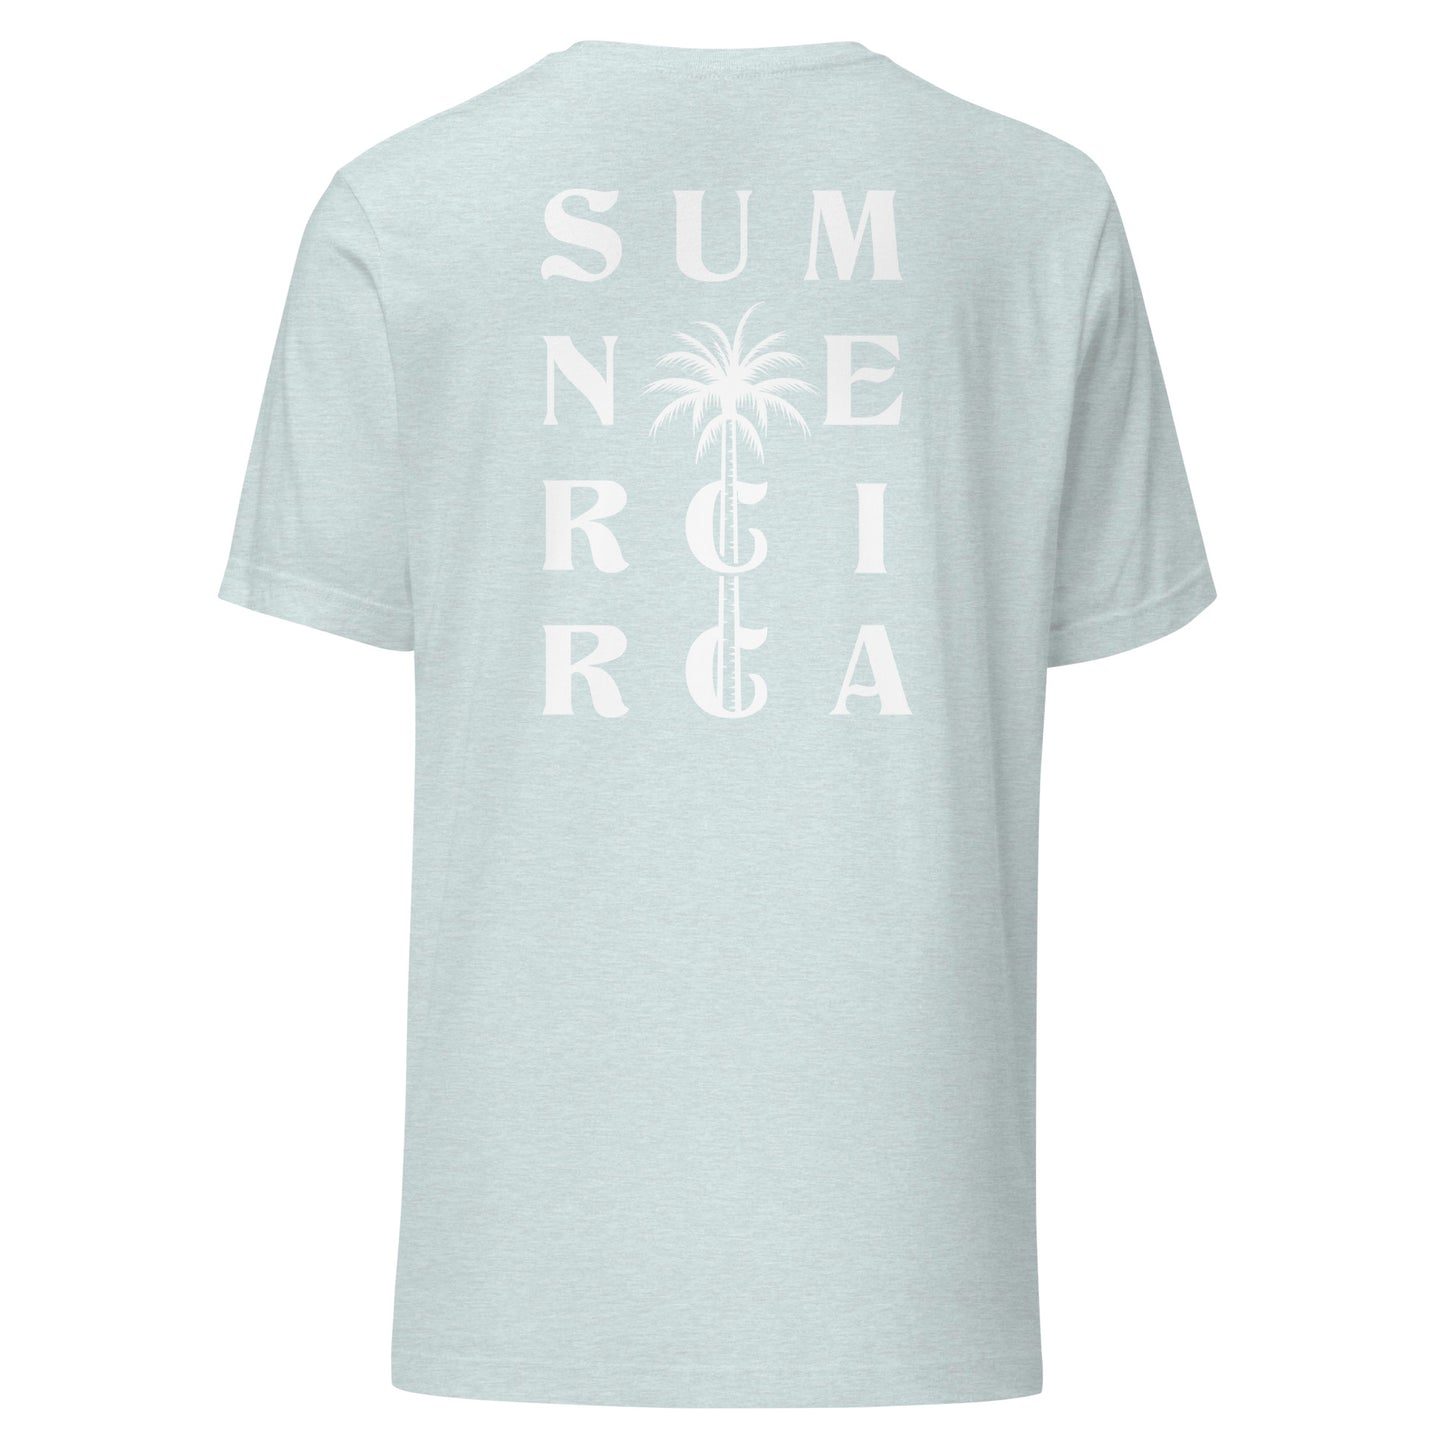 White Sumner circa Year World/T-shirt